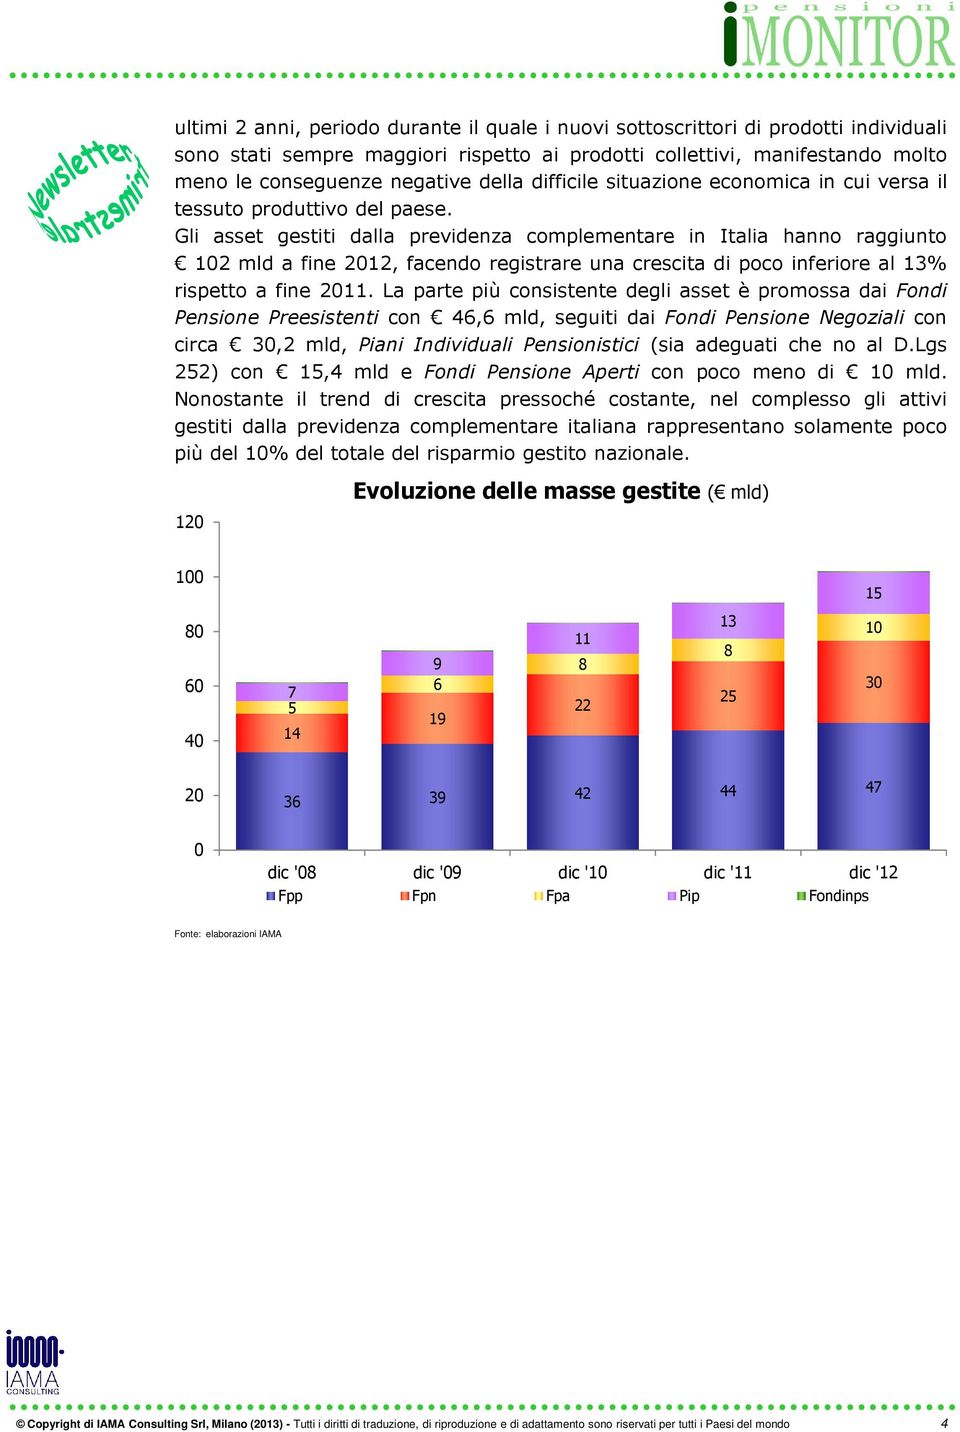 Gli asset gestiti dalla previdenza complementare in Italia hanno raggiunto 102mldafine2012,facendoregistrareunacrescitadipocoinferioreal13% rispetto a fine 2011.